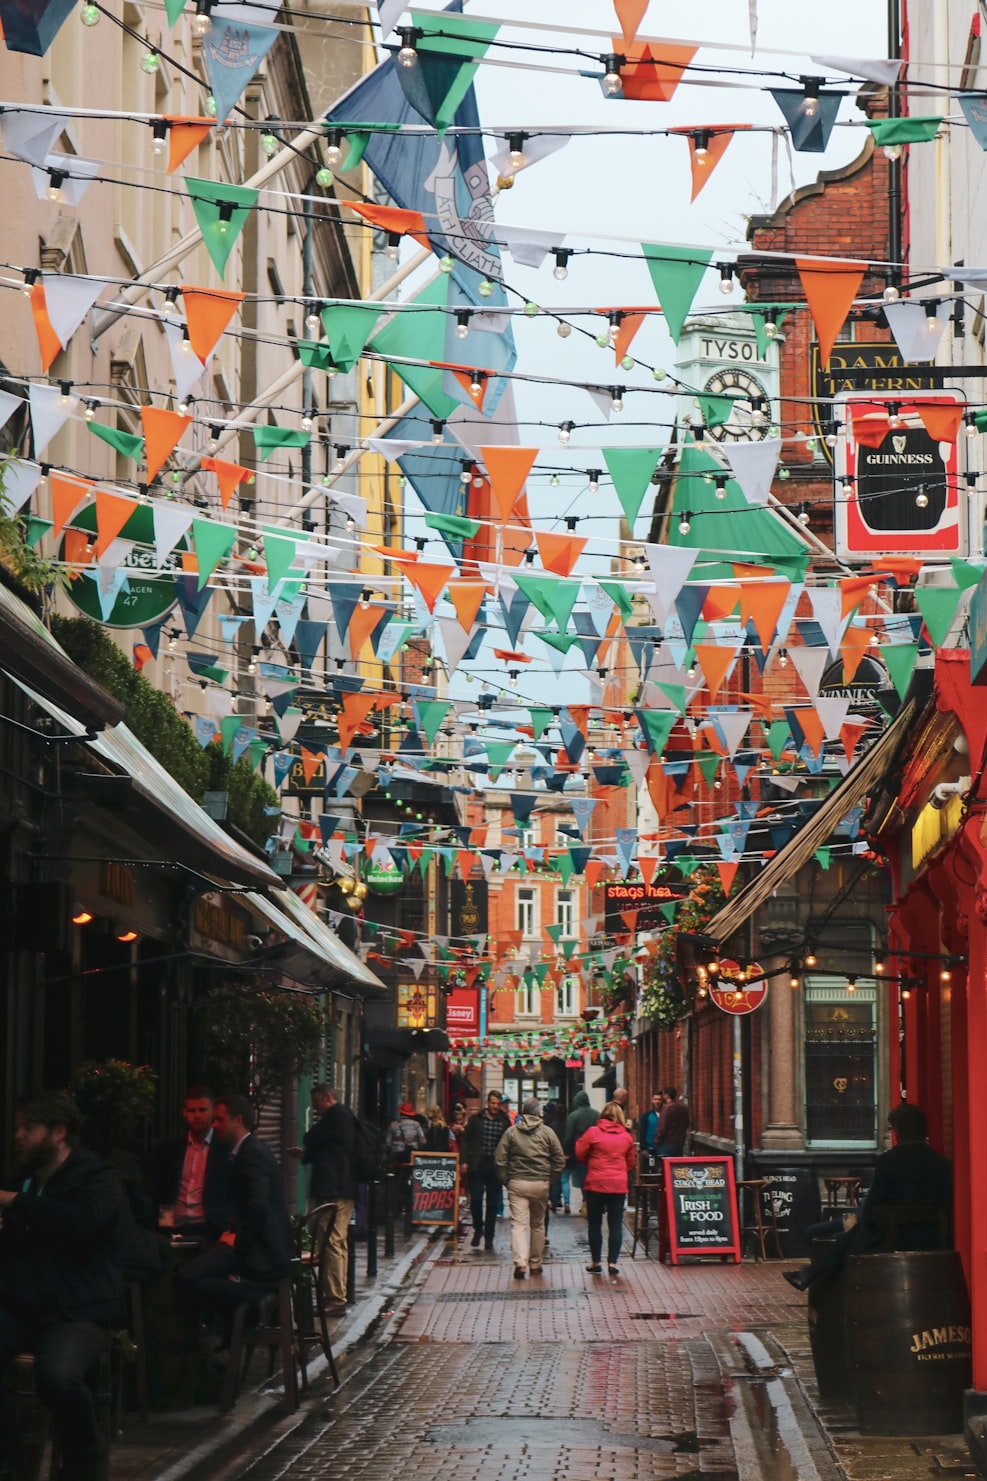 A photo of Dublin